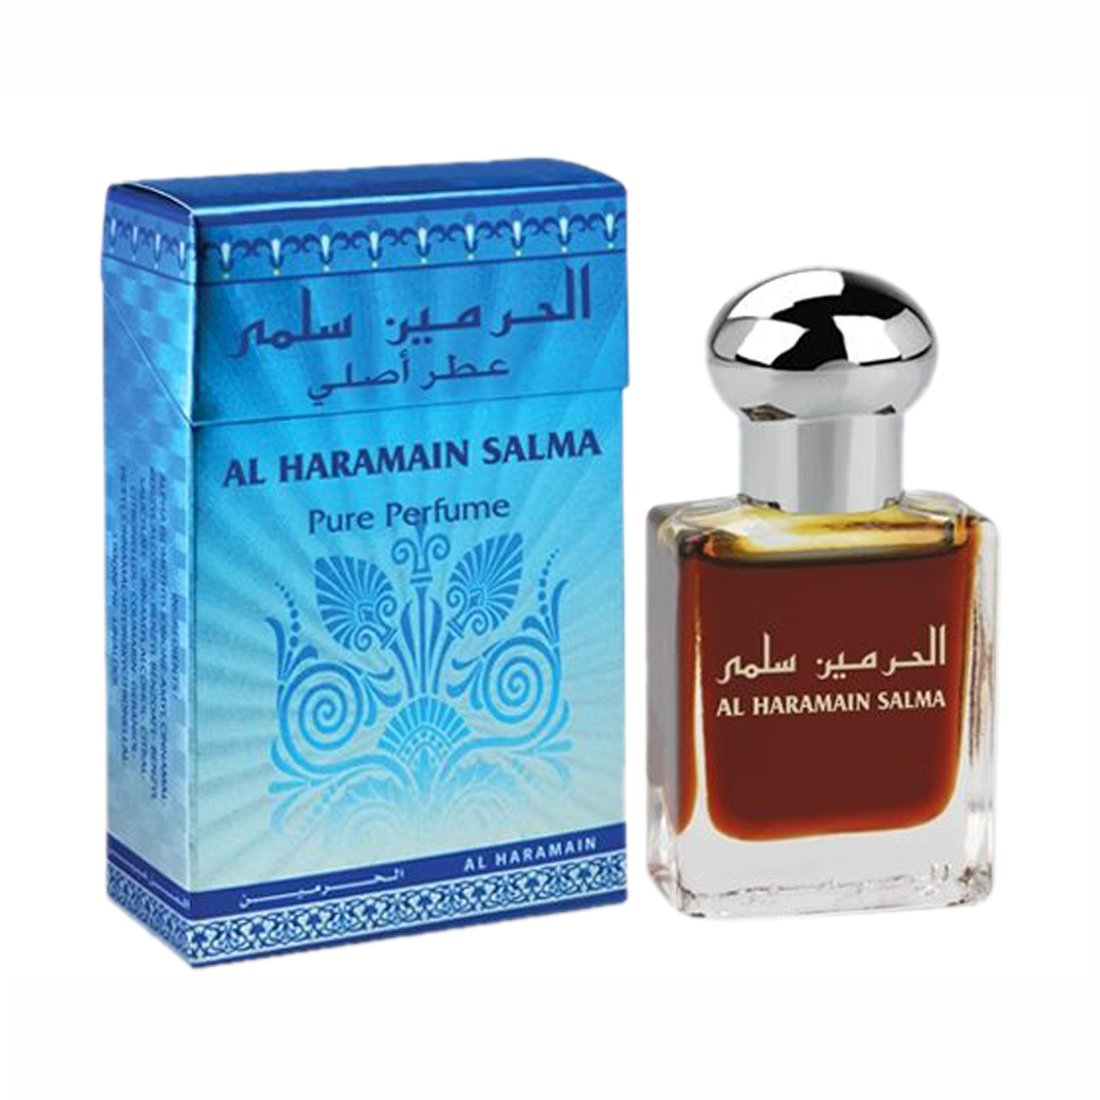 Al Haramain Salma Attar - 15 ml